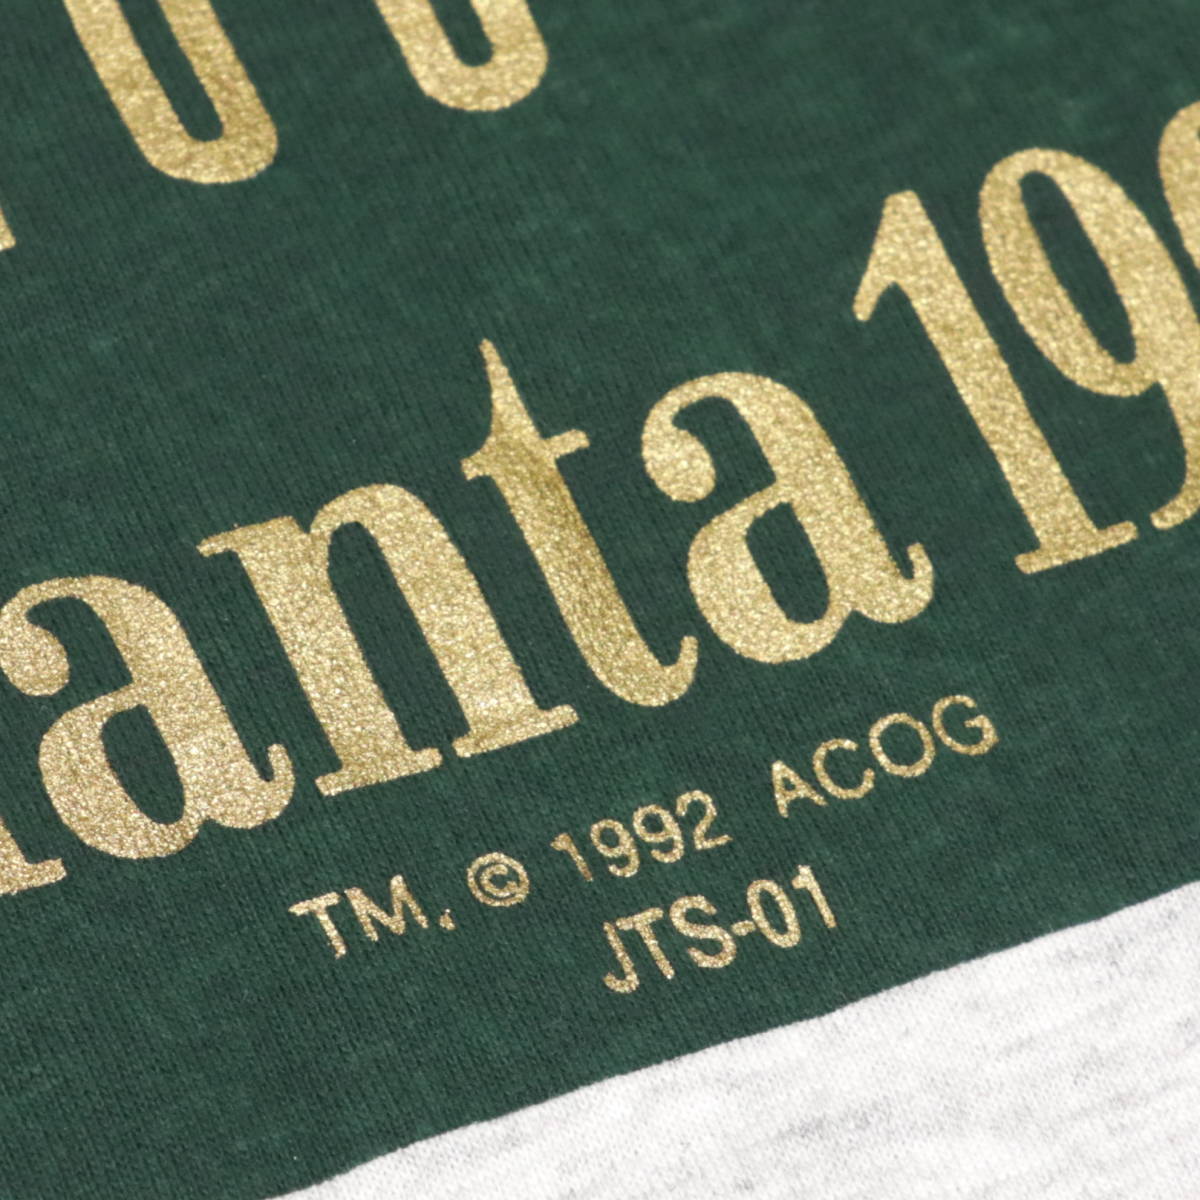 1996 год [a тигр nta Olympic ]100 годовщина *t рубашка * Coca Cola 90s USA производства 